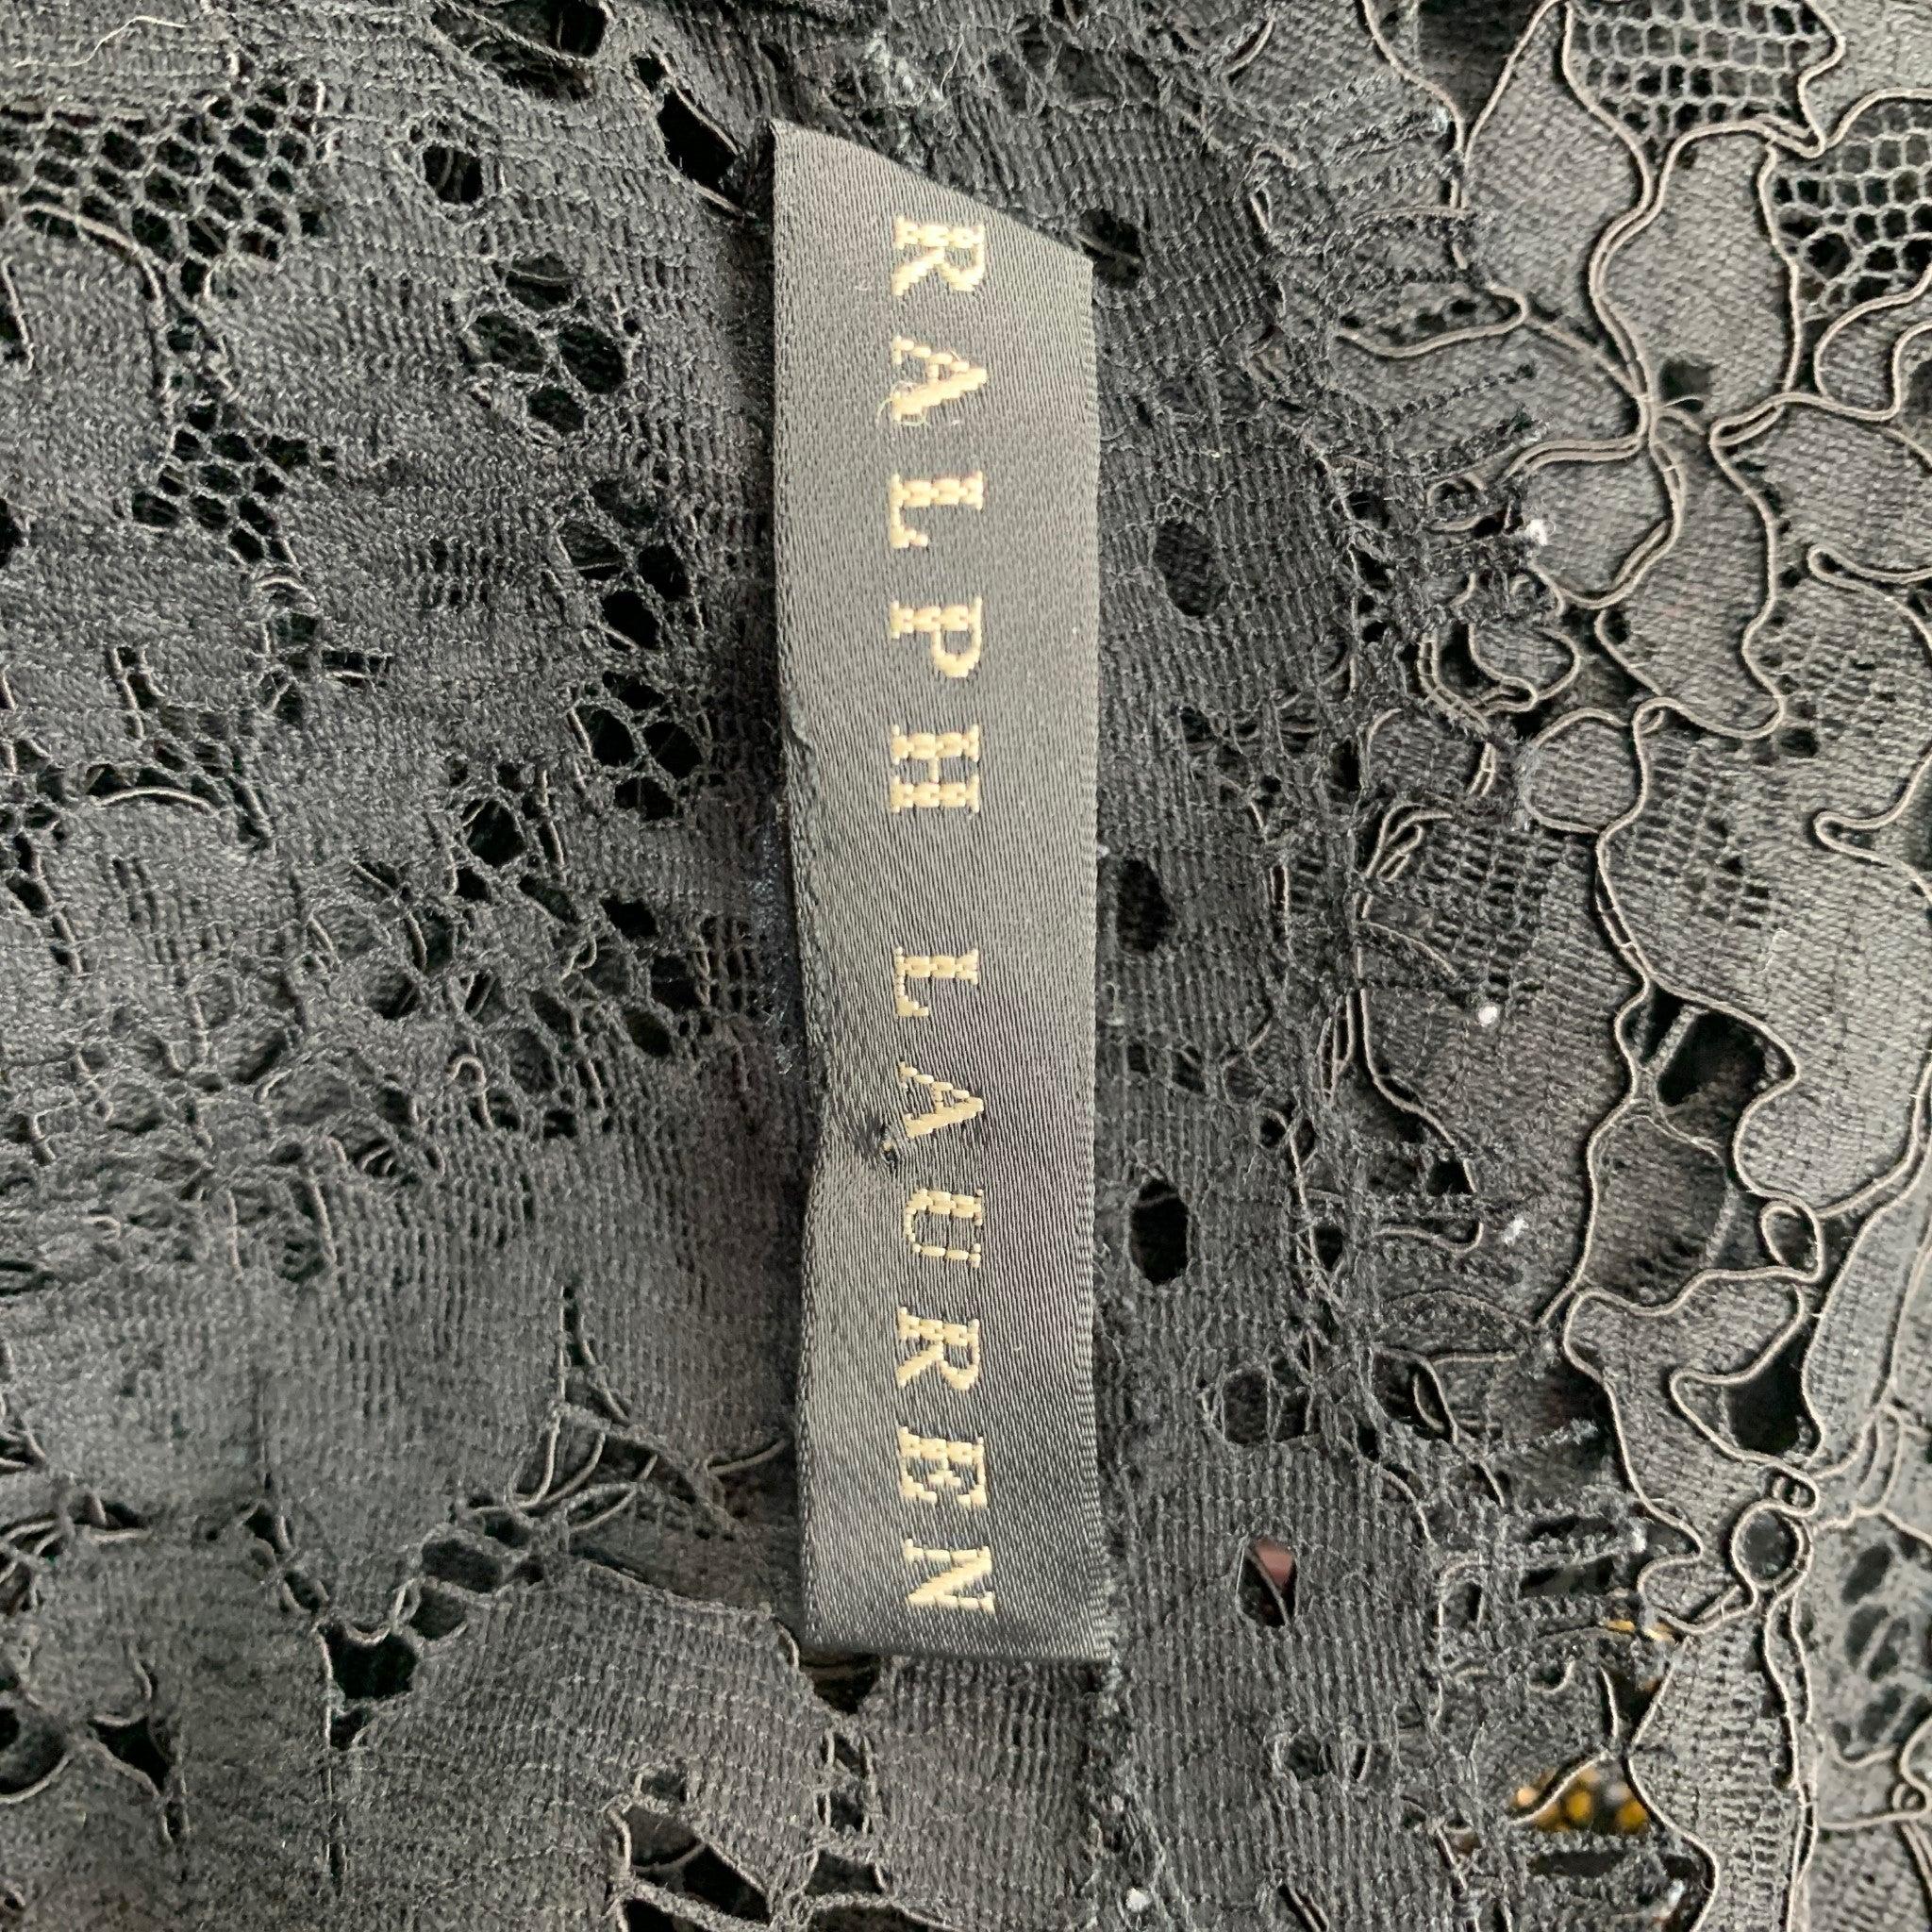 RALPH LAUREN Black Label Size 10 Black Lace Cotton Blend Cocktail Dress For Sale 2